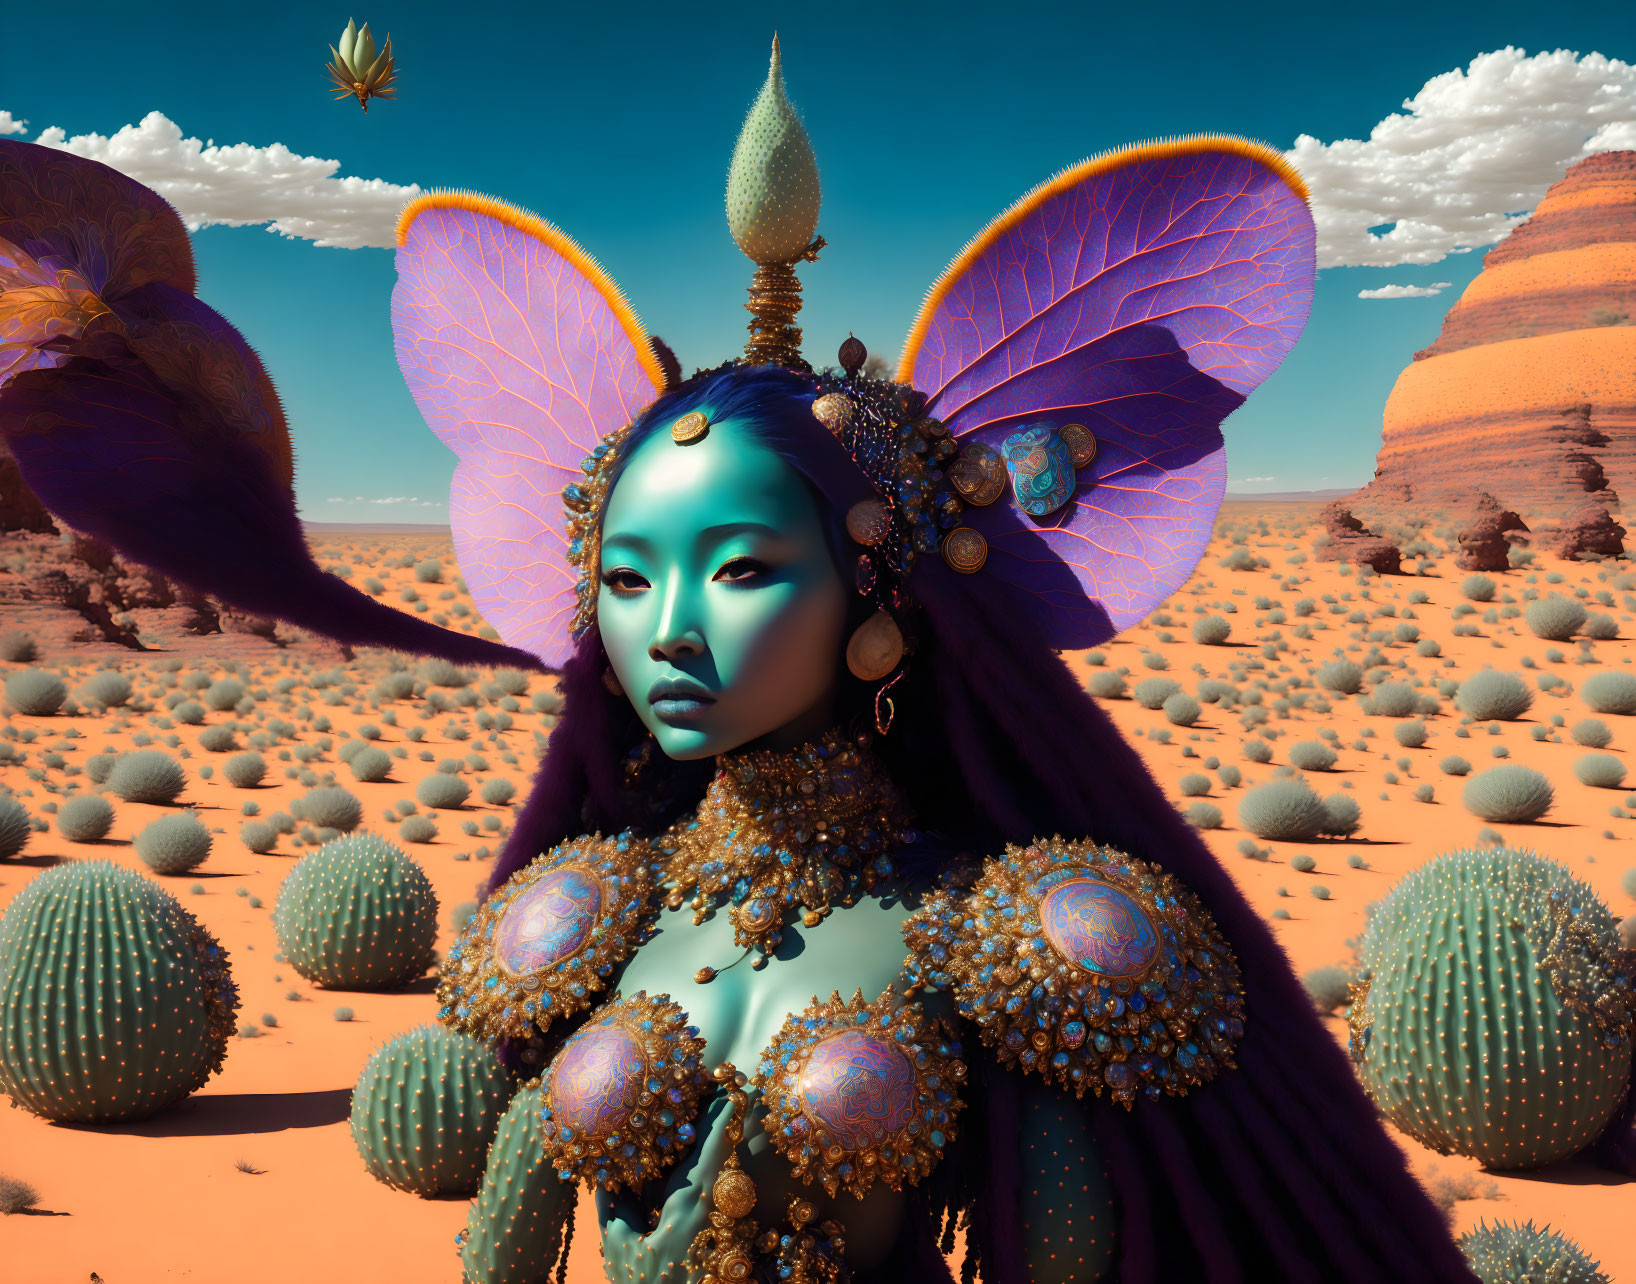 Digital artwork of female figure with blue skin, butterfly wings, headdress, and jewelry in desert landscape